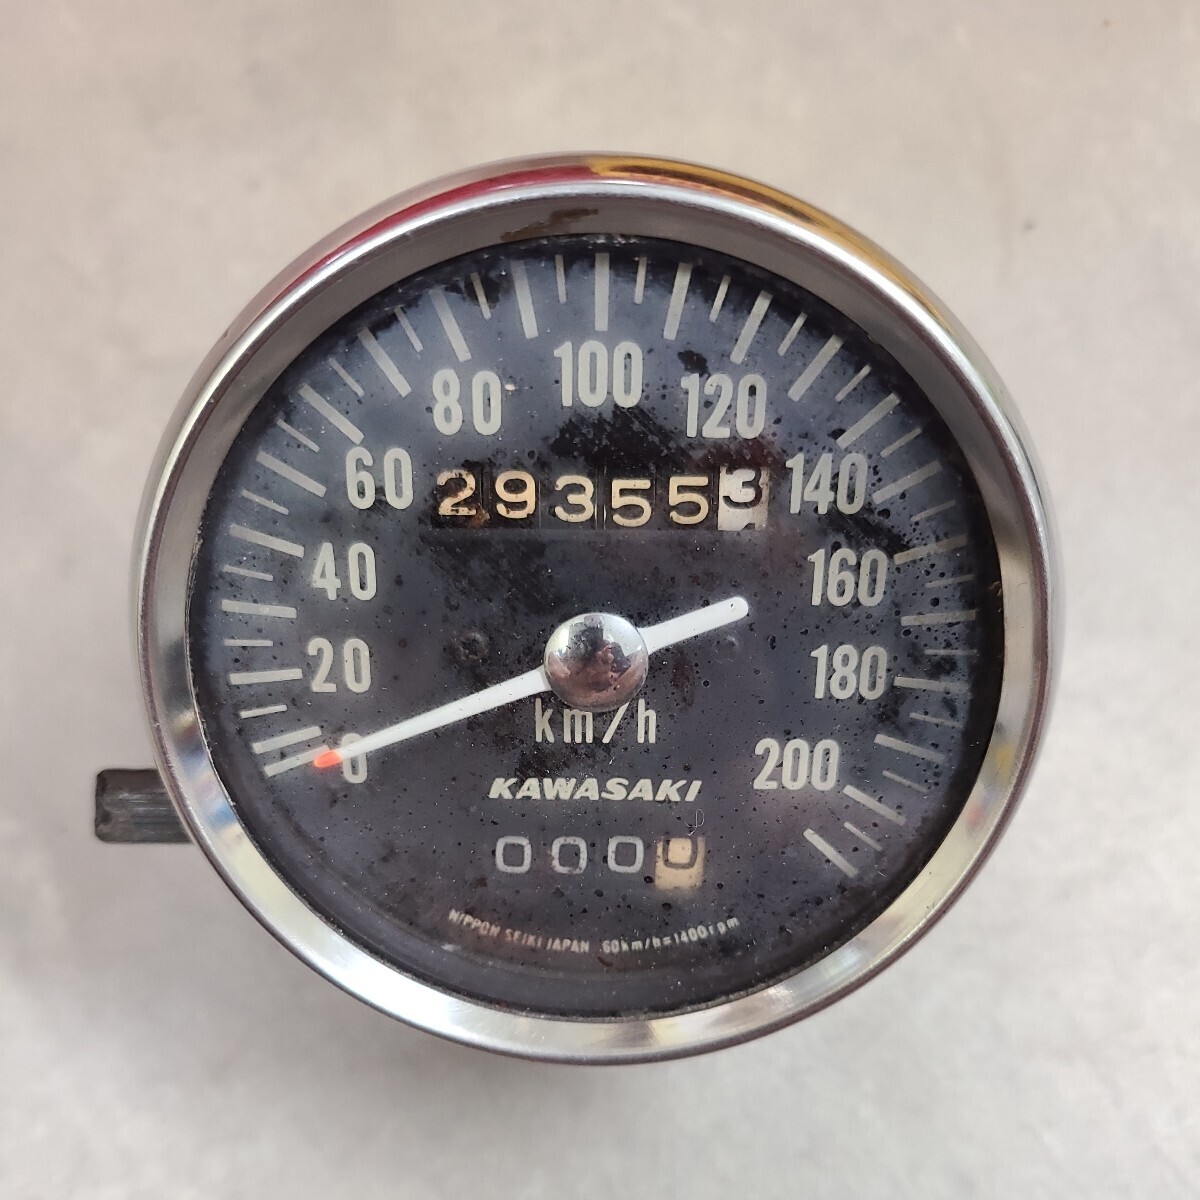  Kawasaki W1S speed meter tachometer meter bracket 